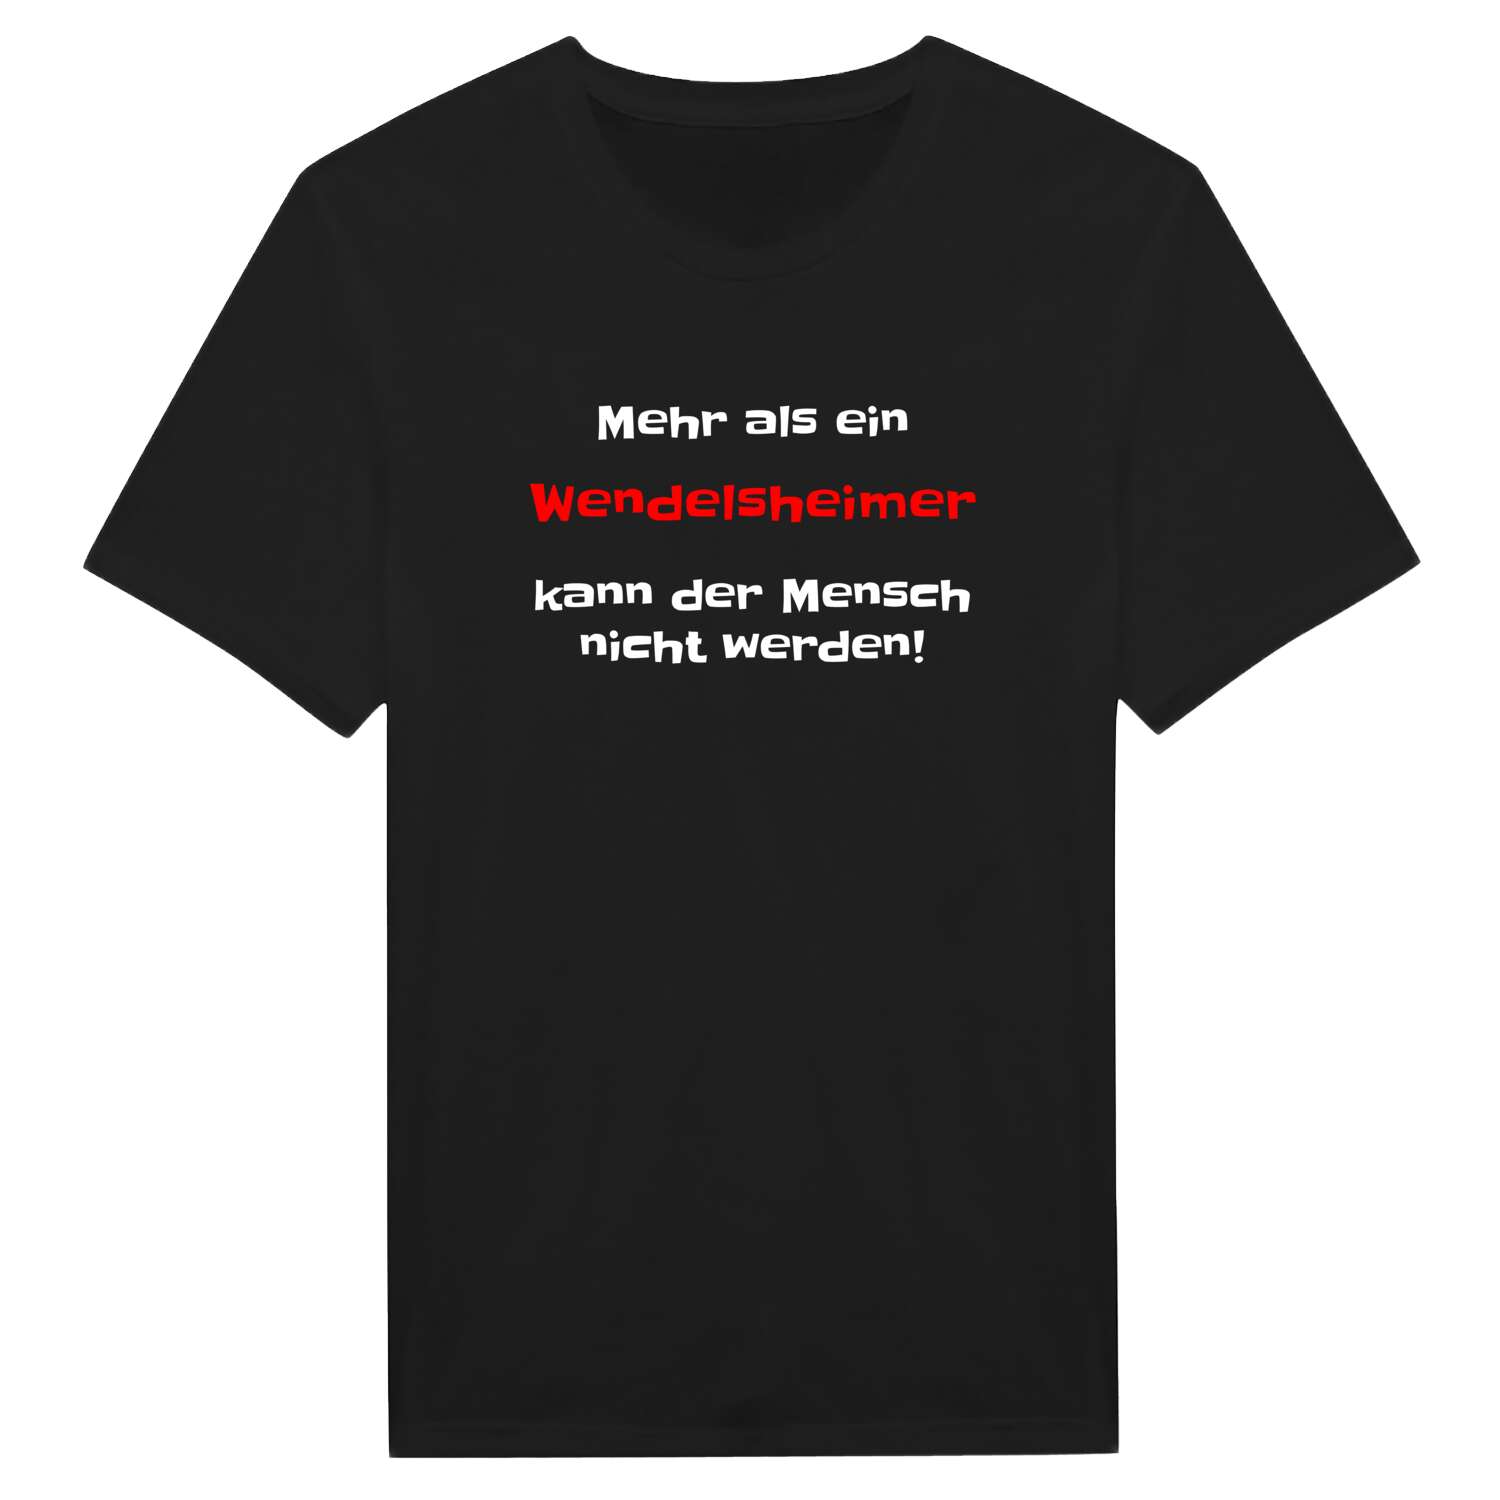 Wendelsheim T-Shirt »Mehr als ein«